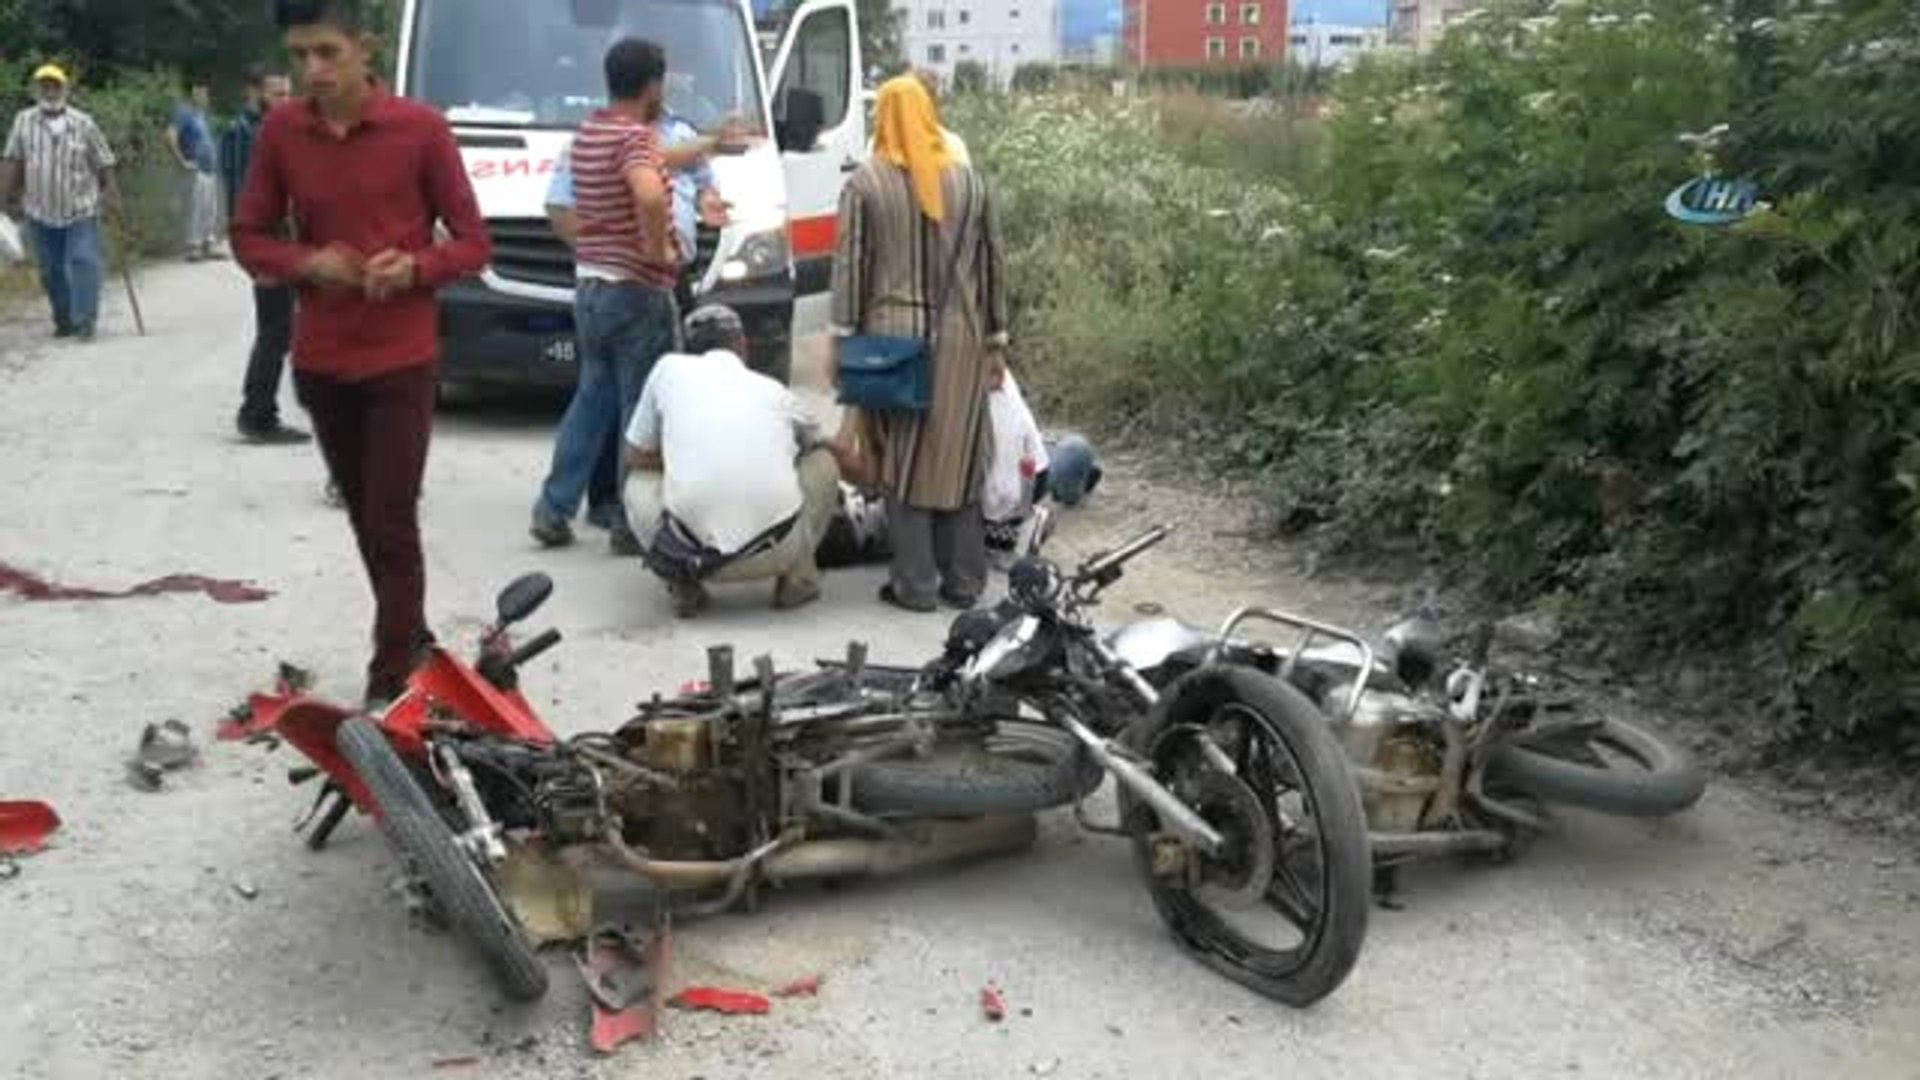 Bursa'da Feci Motosiklet Kazası: 1 Ölü, 1 Yaralı - Dailymotion Video